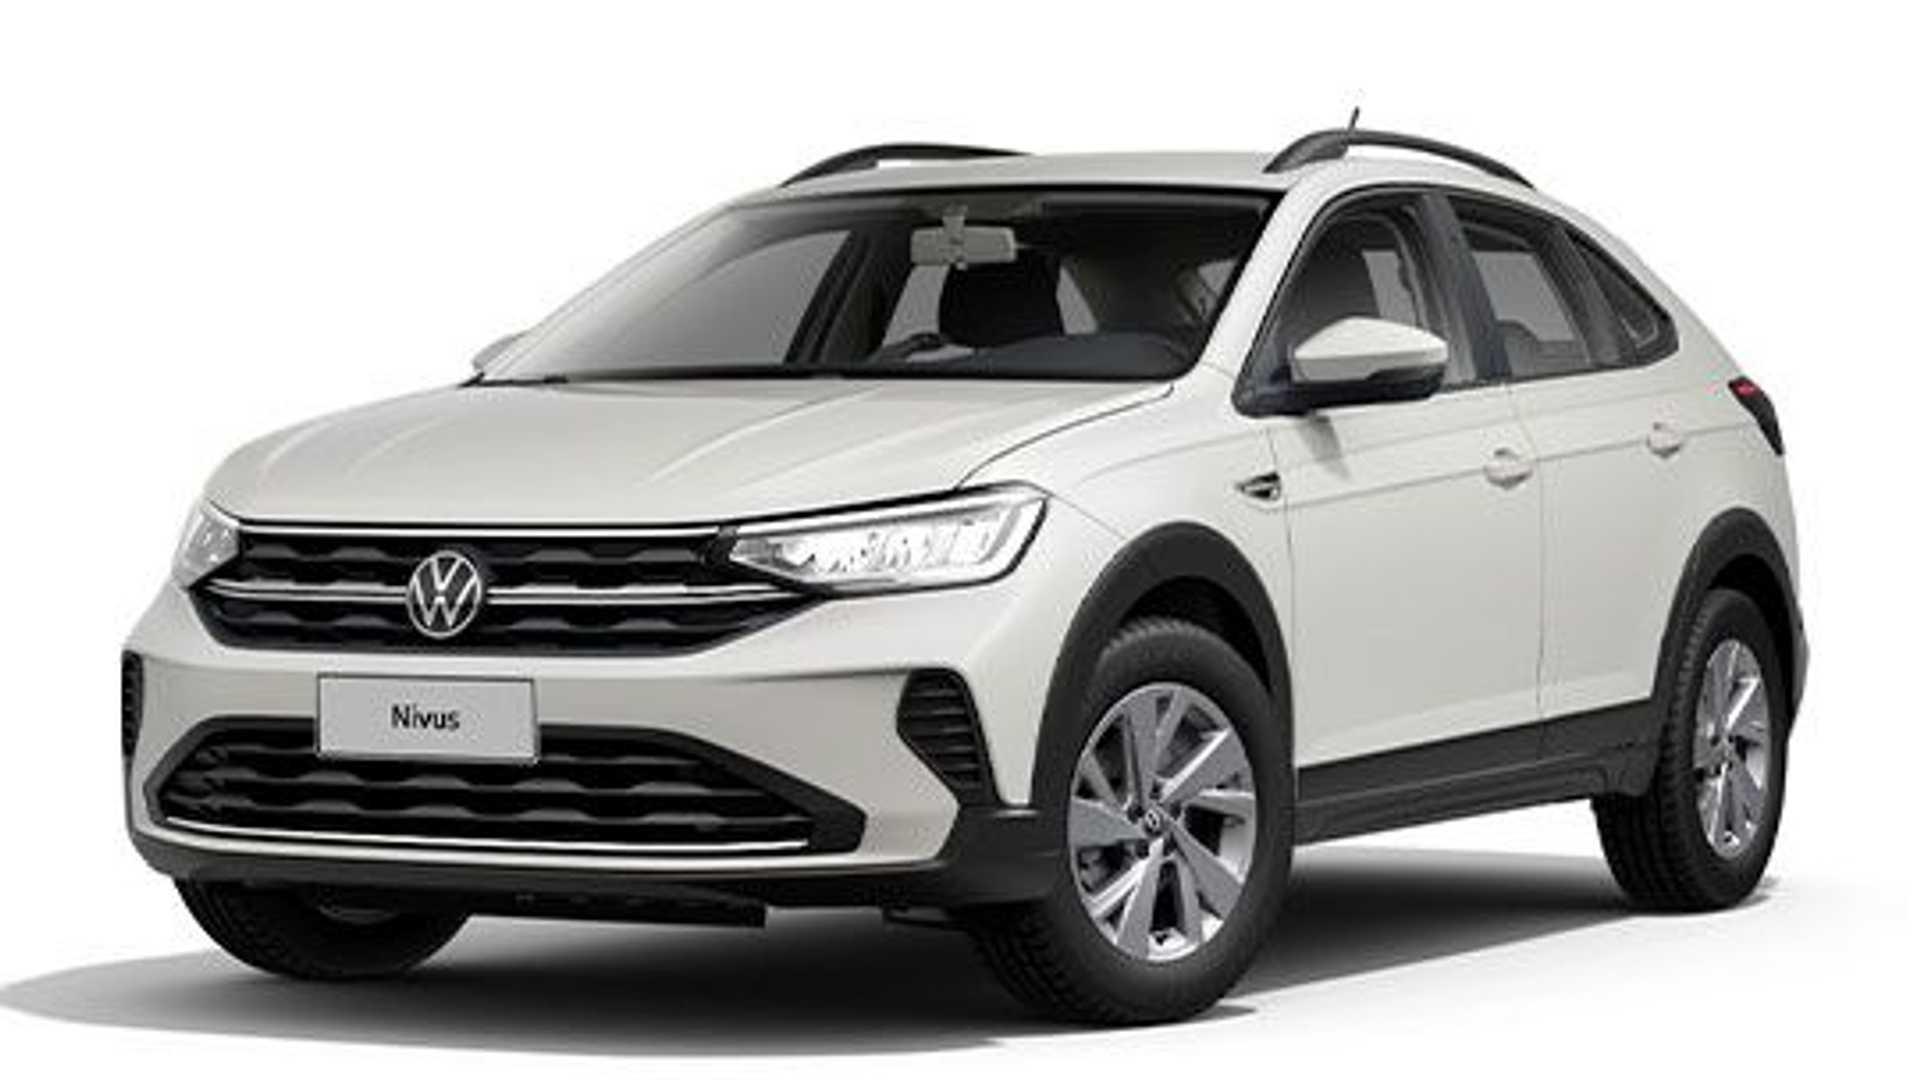 Volkswagen amplía la gama del Nivus | Garantia Plus